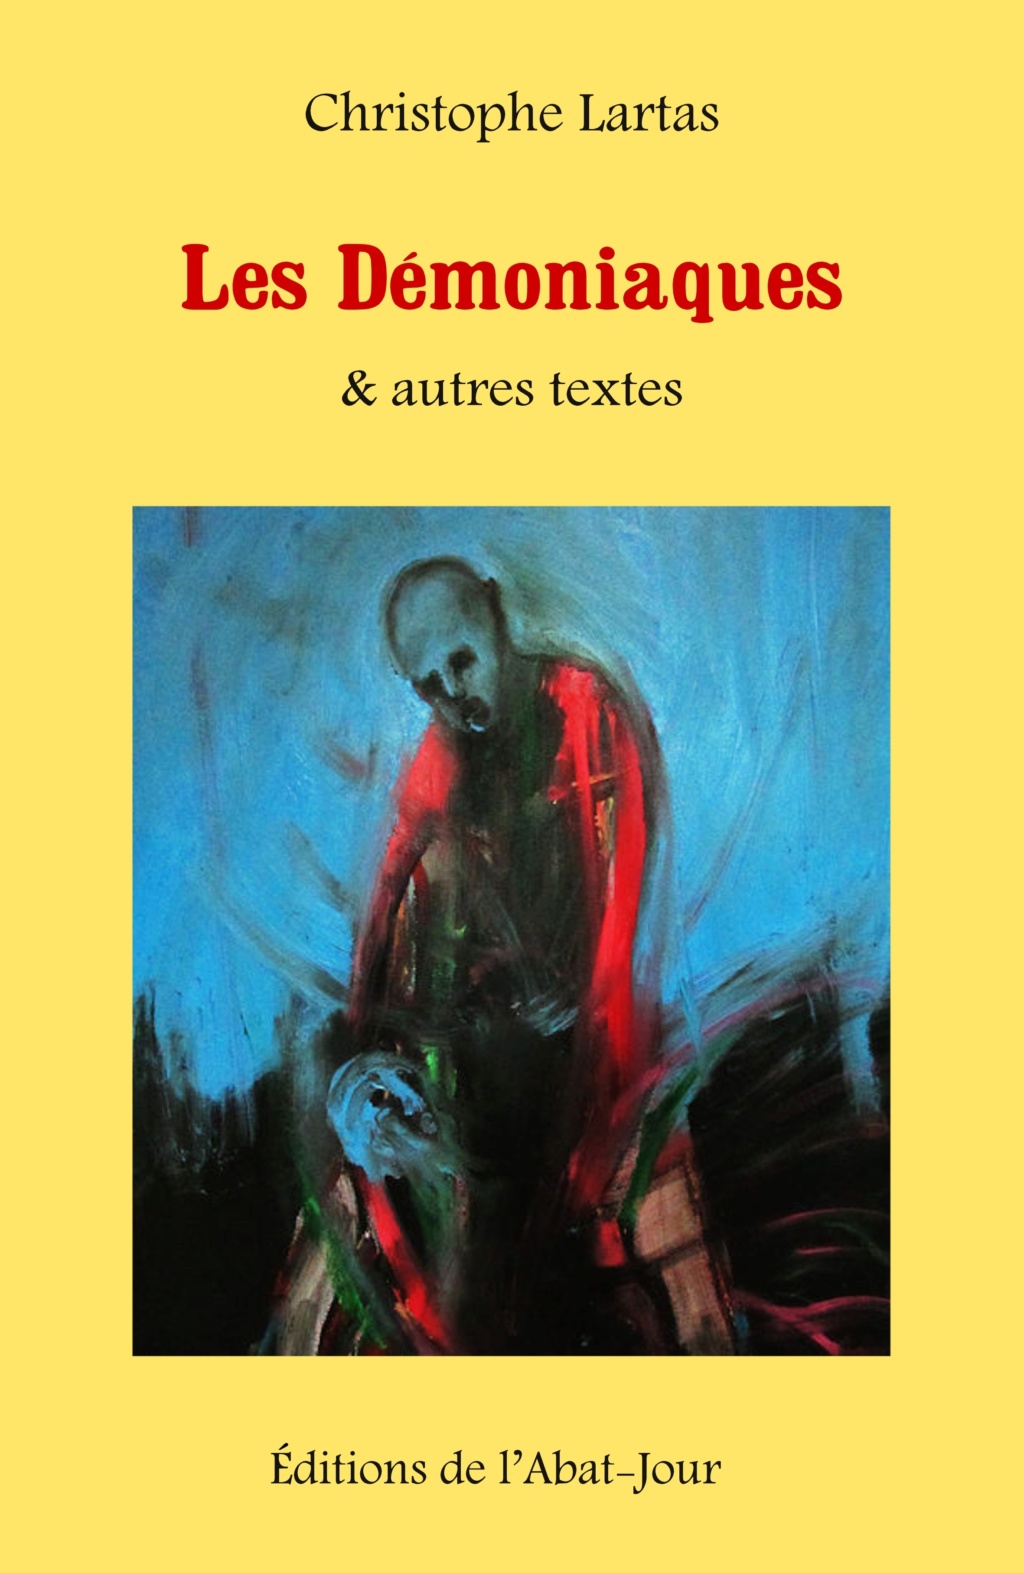 Les Démoniaques & autres texte - Christophe Lartas Les_dz11